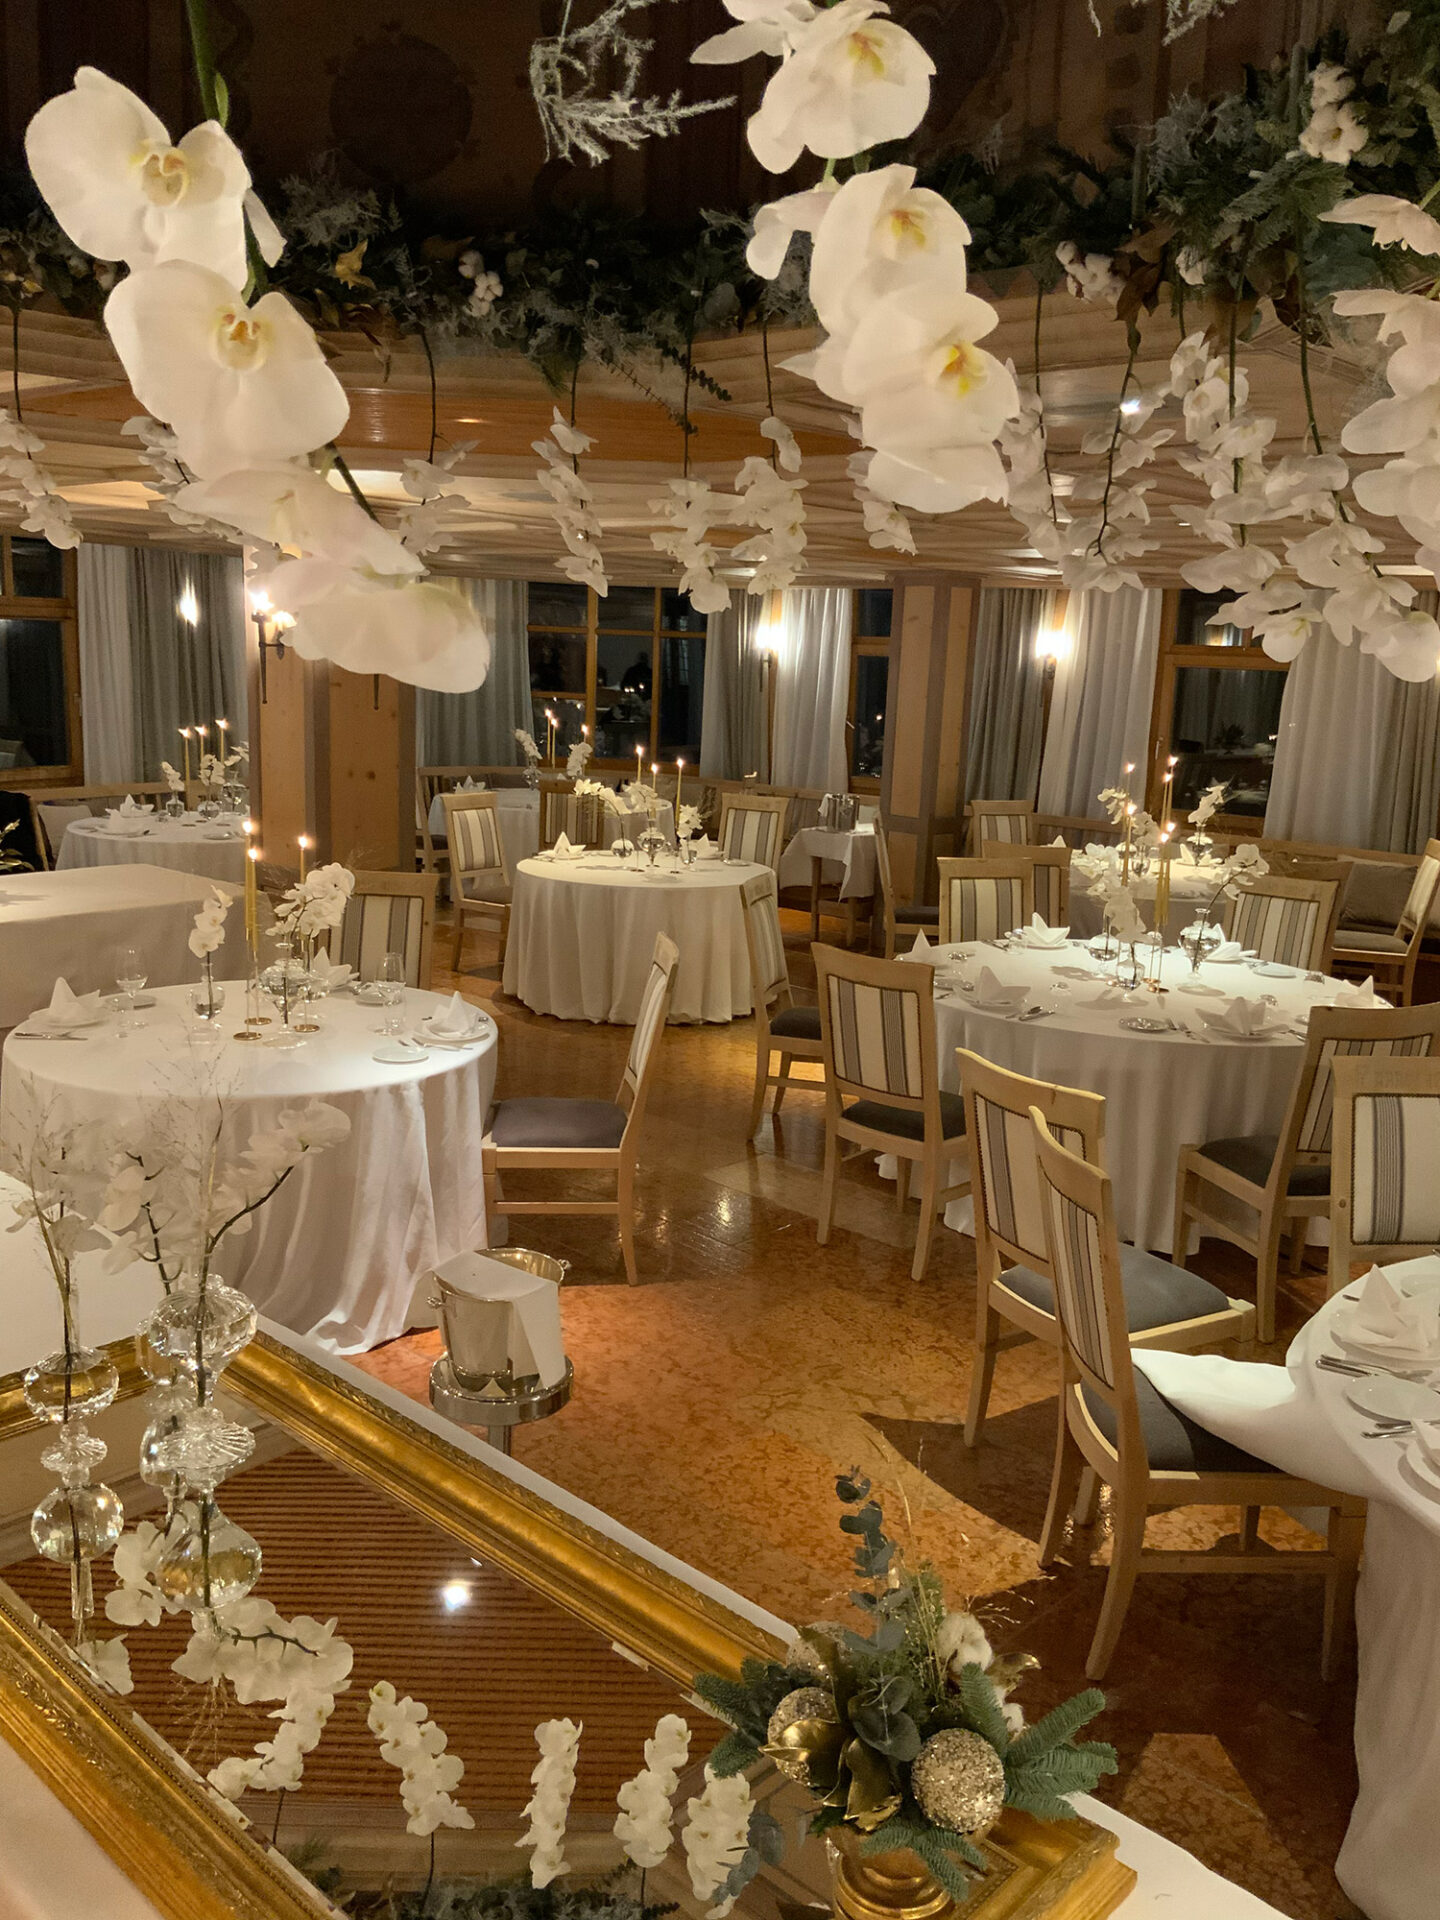 Flowersbl - Allestimenti floreali per eventi, hotel, matrimoni. Servizio di floral design.